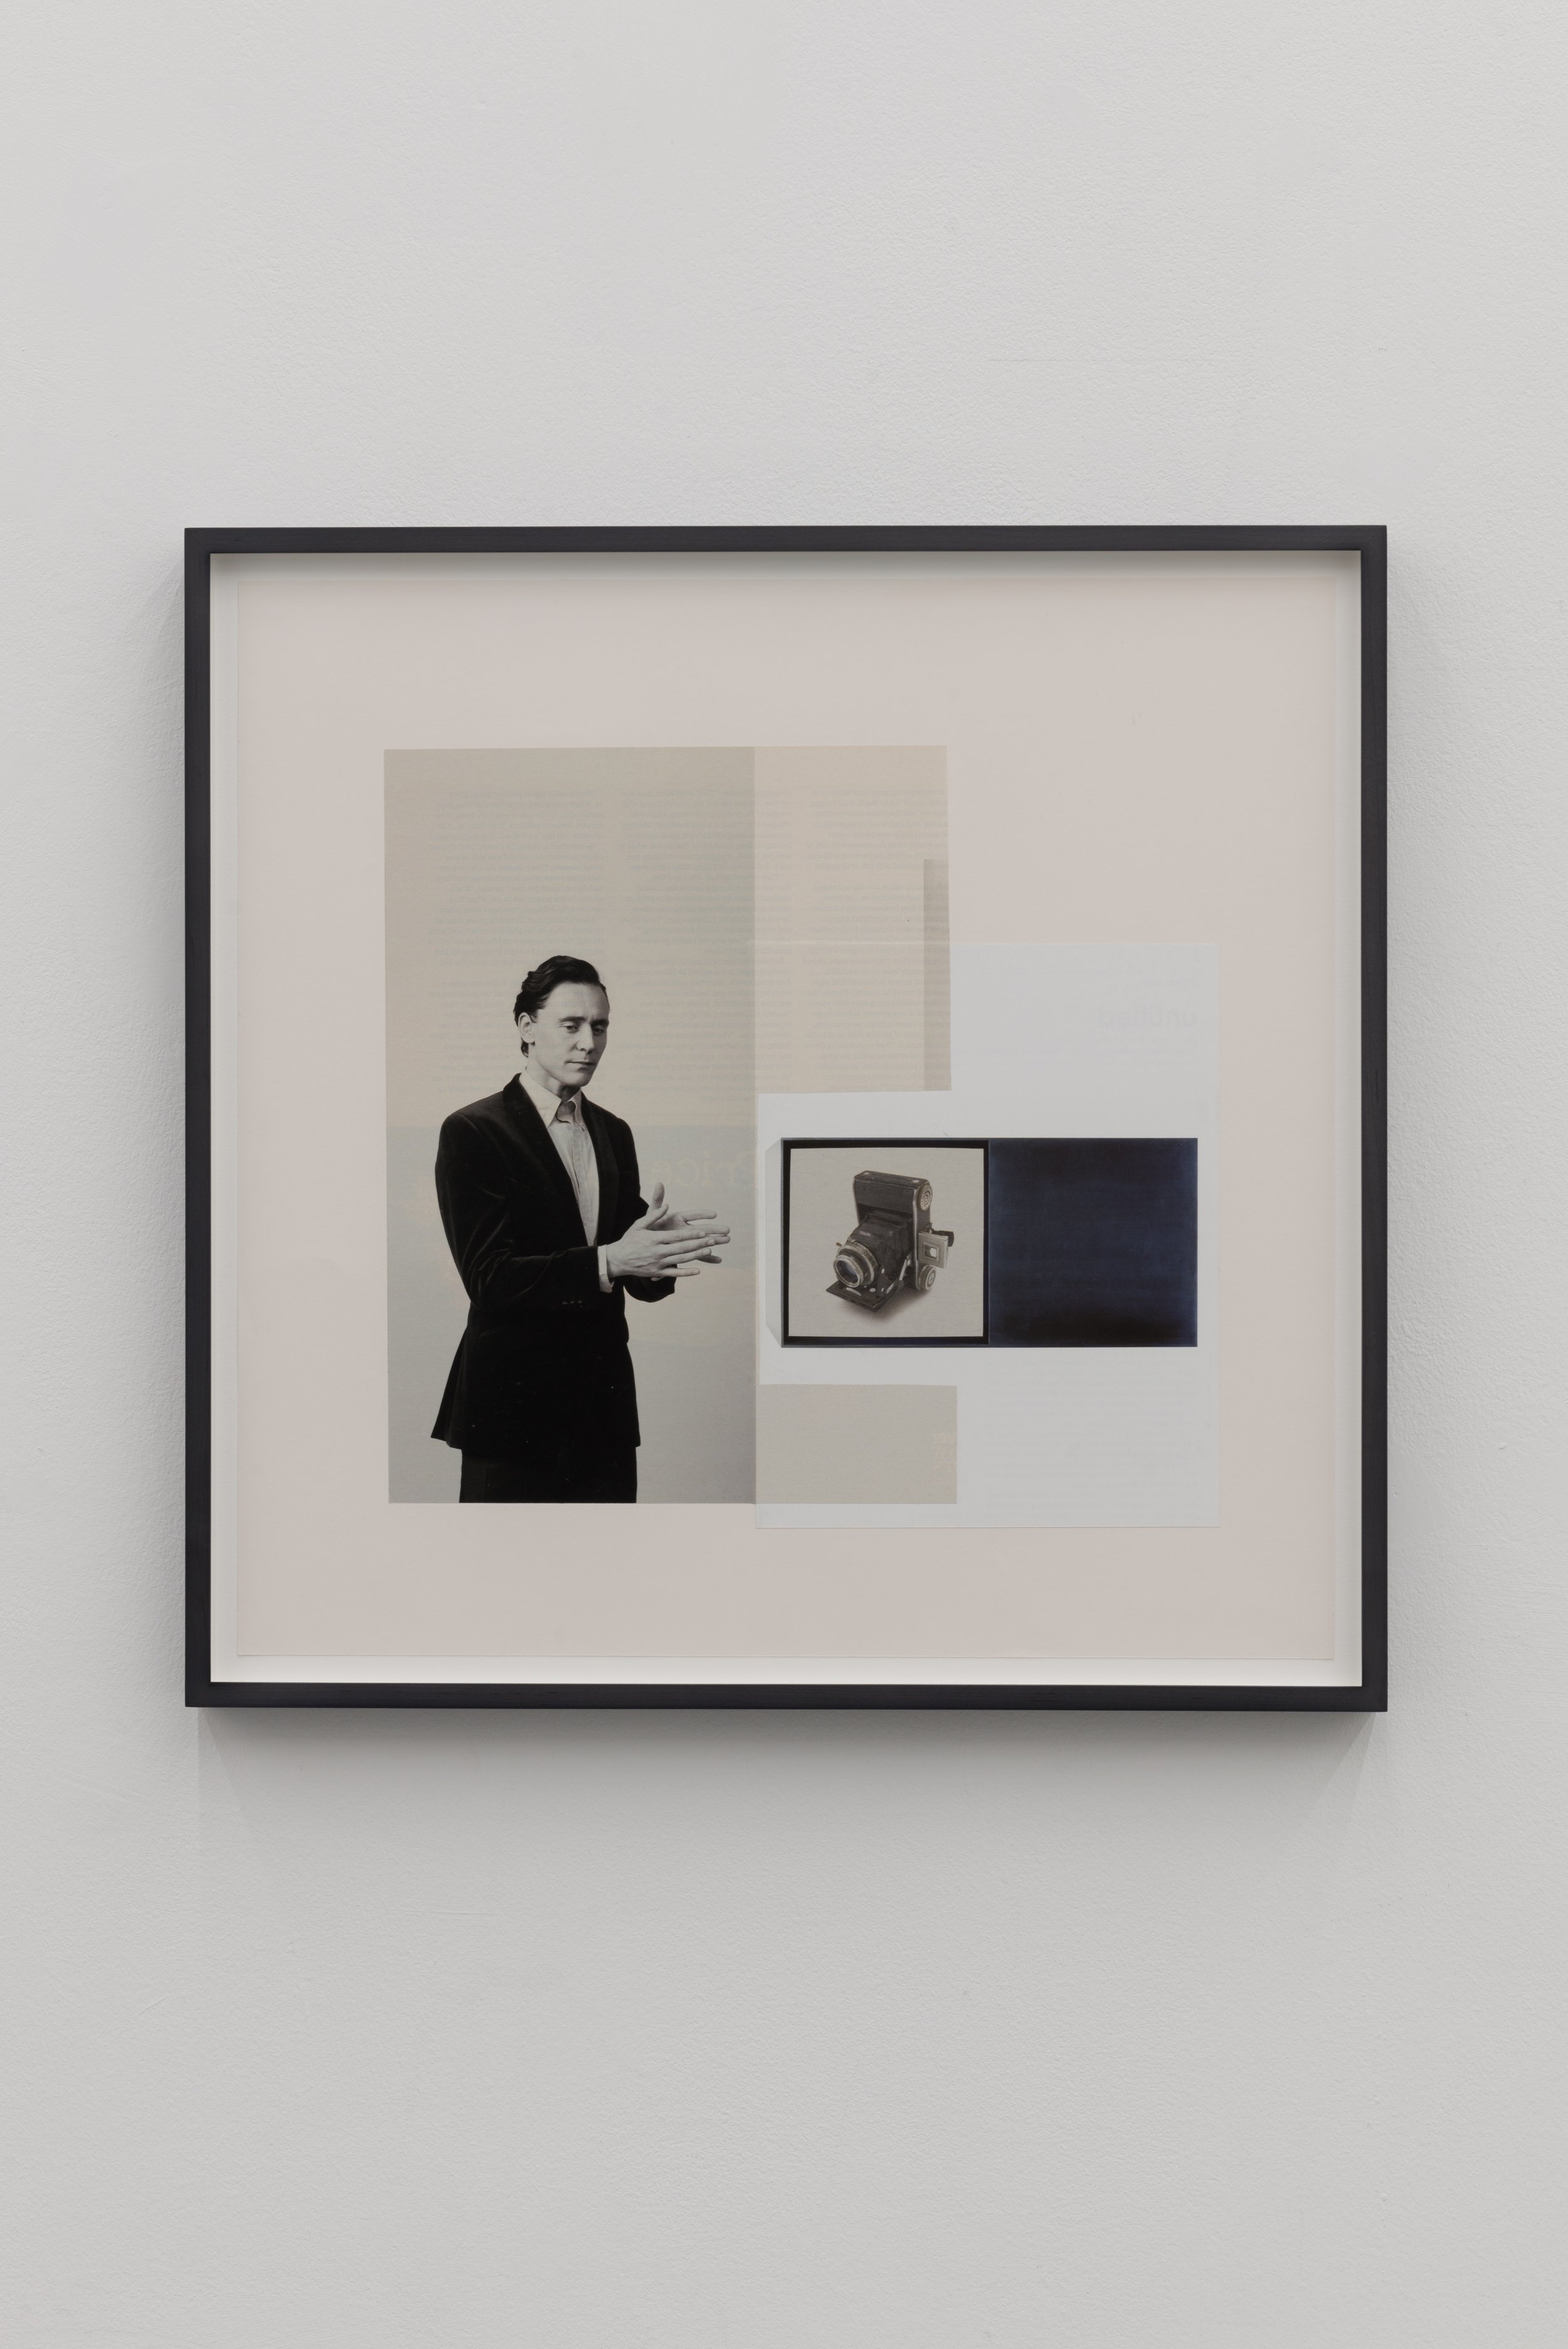  Untitled (Intertext), 2012&nbsp;  Collage&nbsp;  44.5 x 44.5 cm  